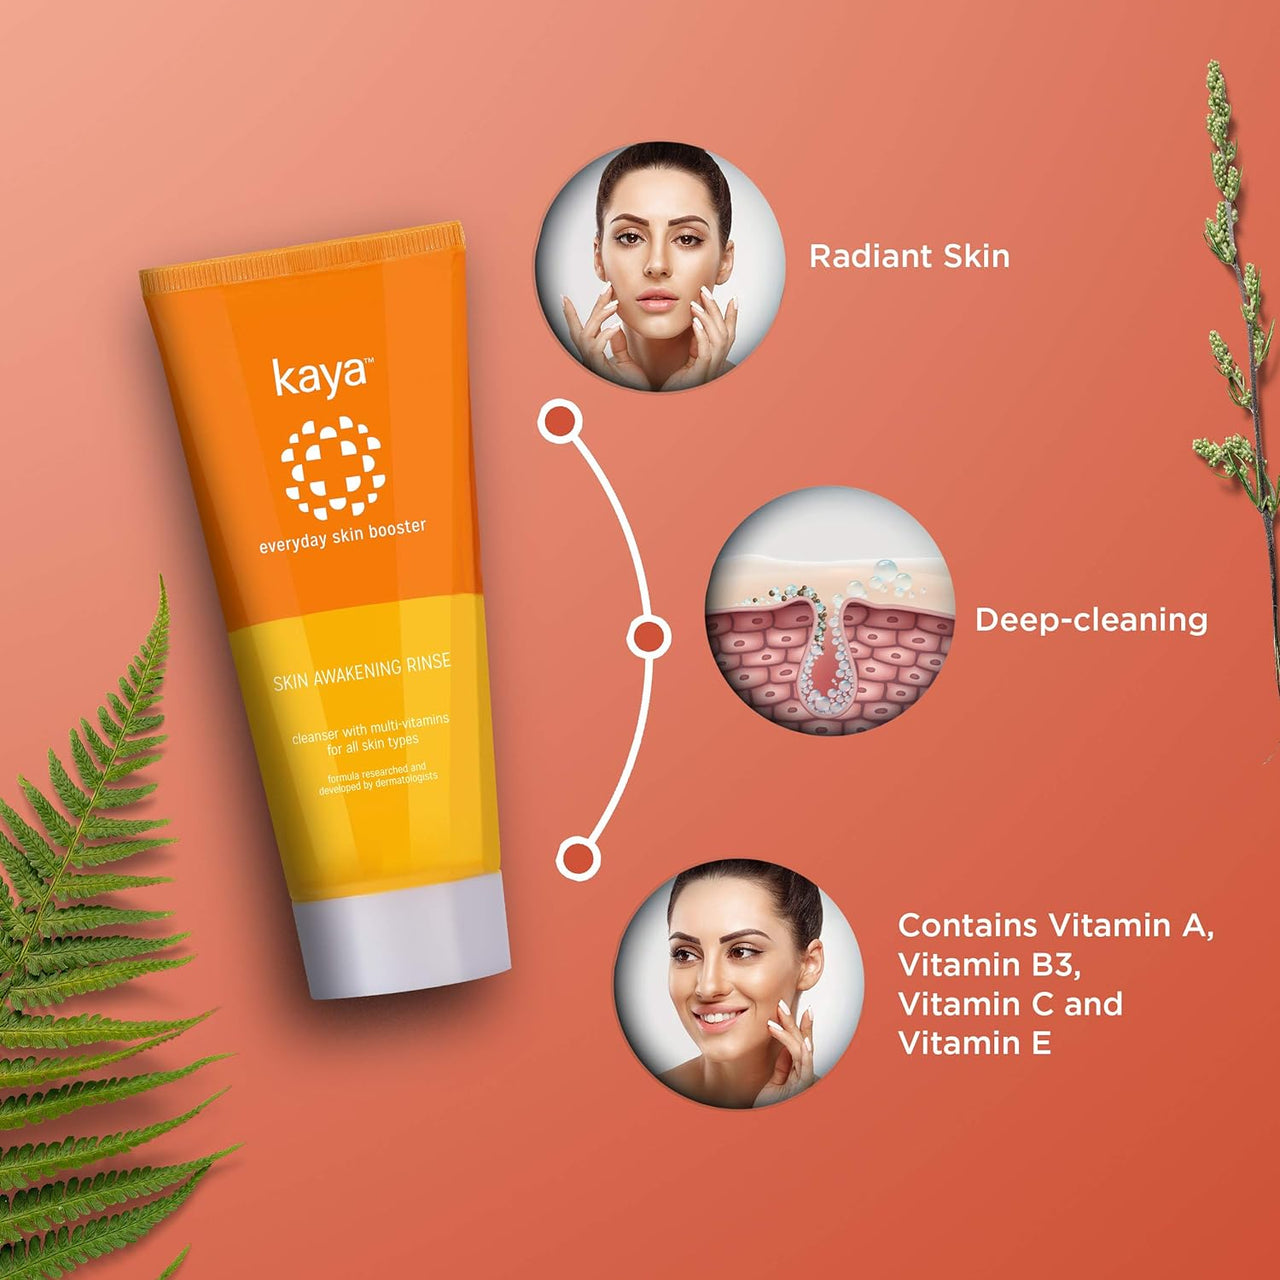 Kaya Skin Awakening Rinse Face Wash with Niacinamide, Vitamin C, A & E for All Skin Types